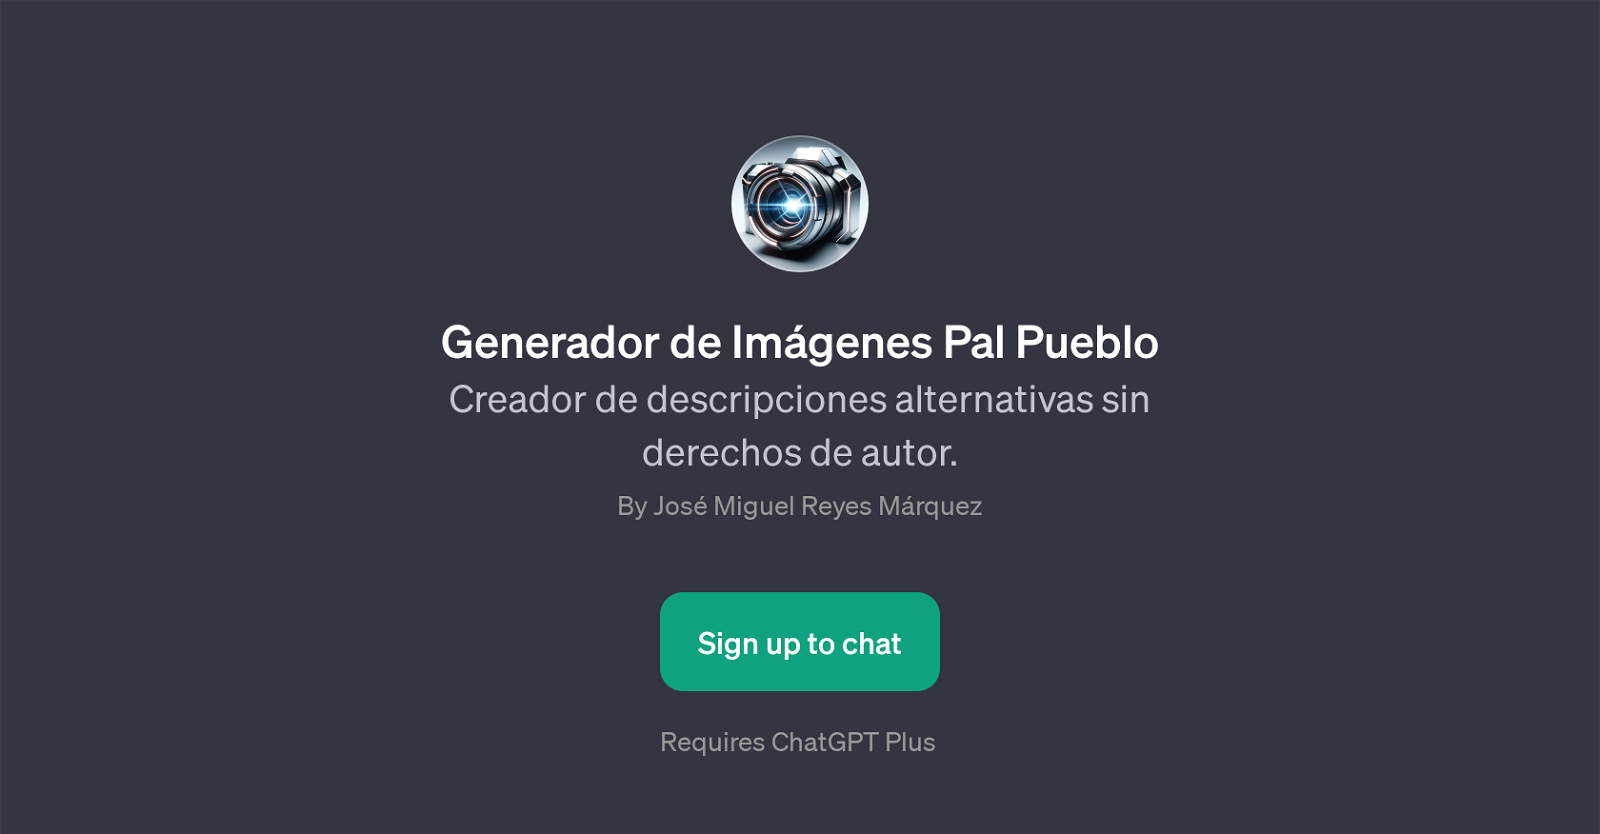 Generador de Imgenes Pal Pueblo website